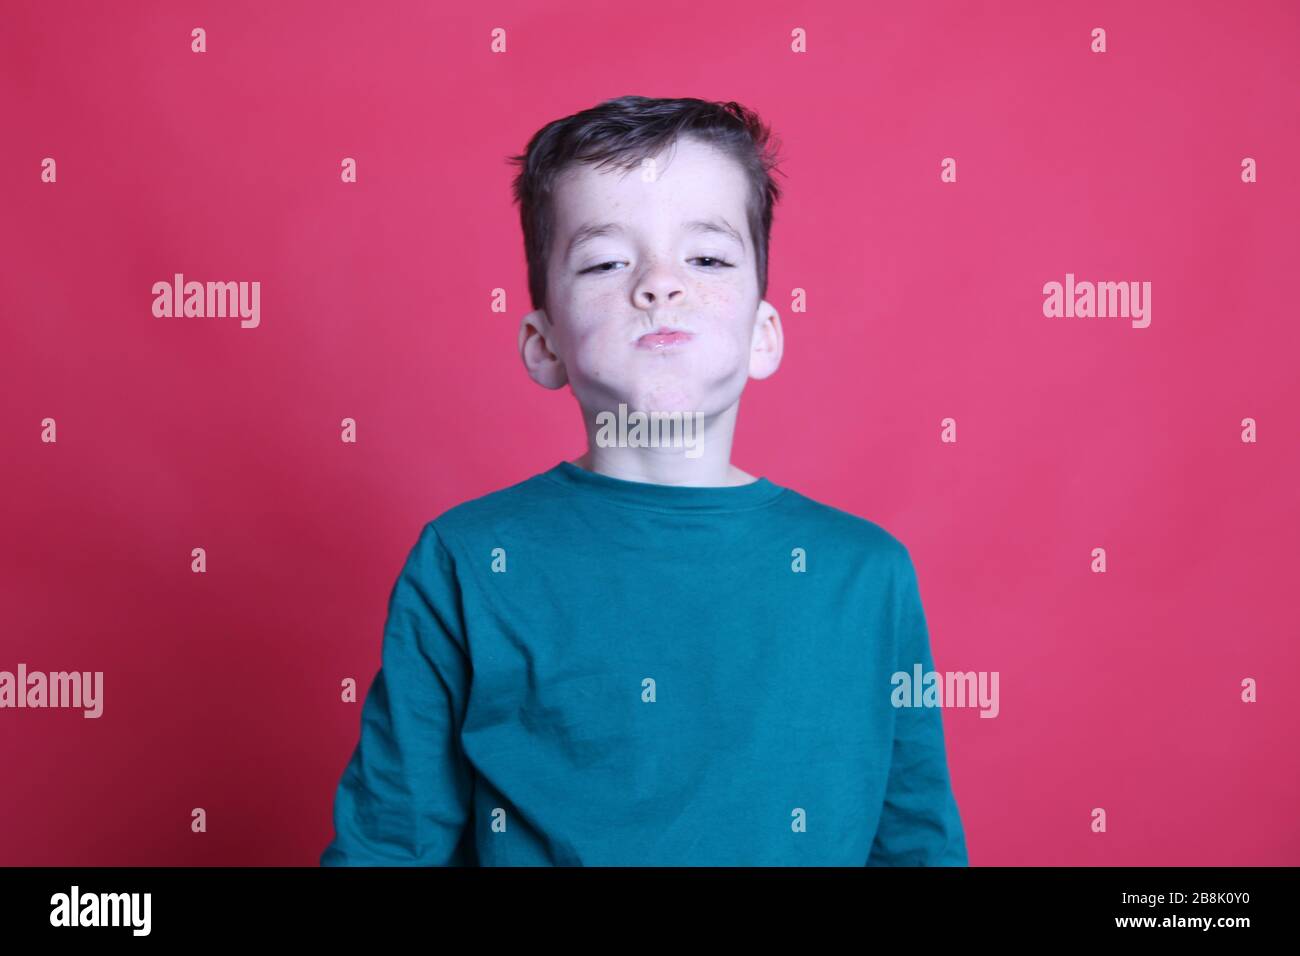 UK 8-jähriger Junge mit seinem Mund voller Orange, Wangen wulstig, roter Hintergrund, UK 2020 Stockfoto